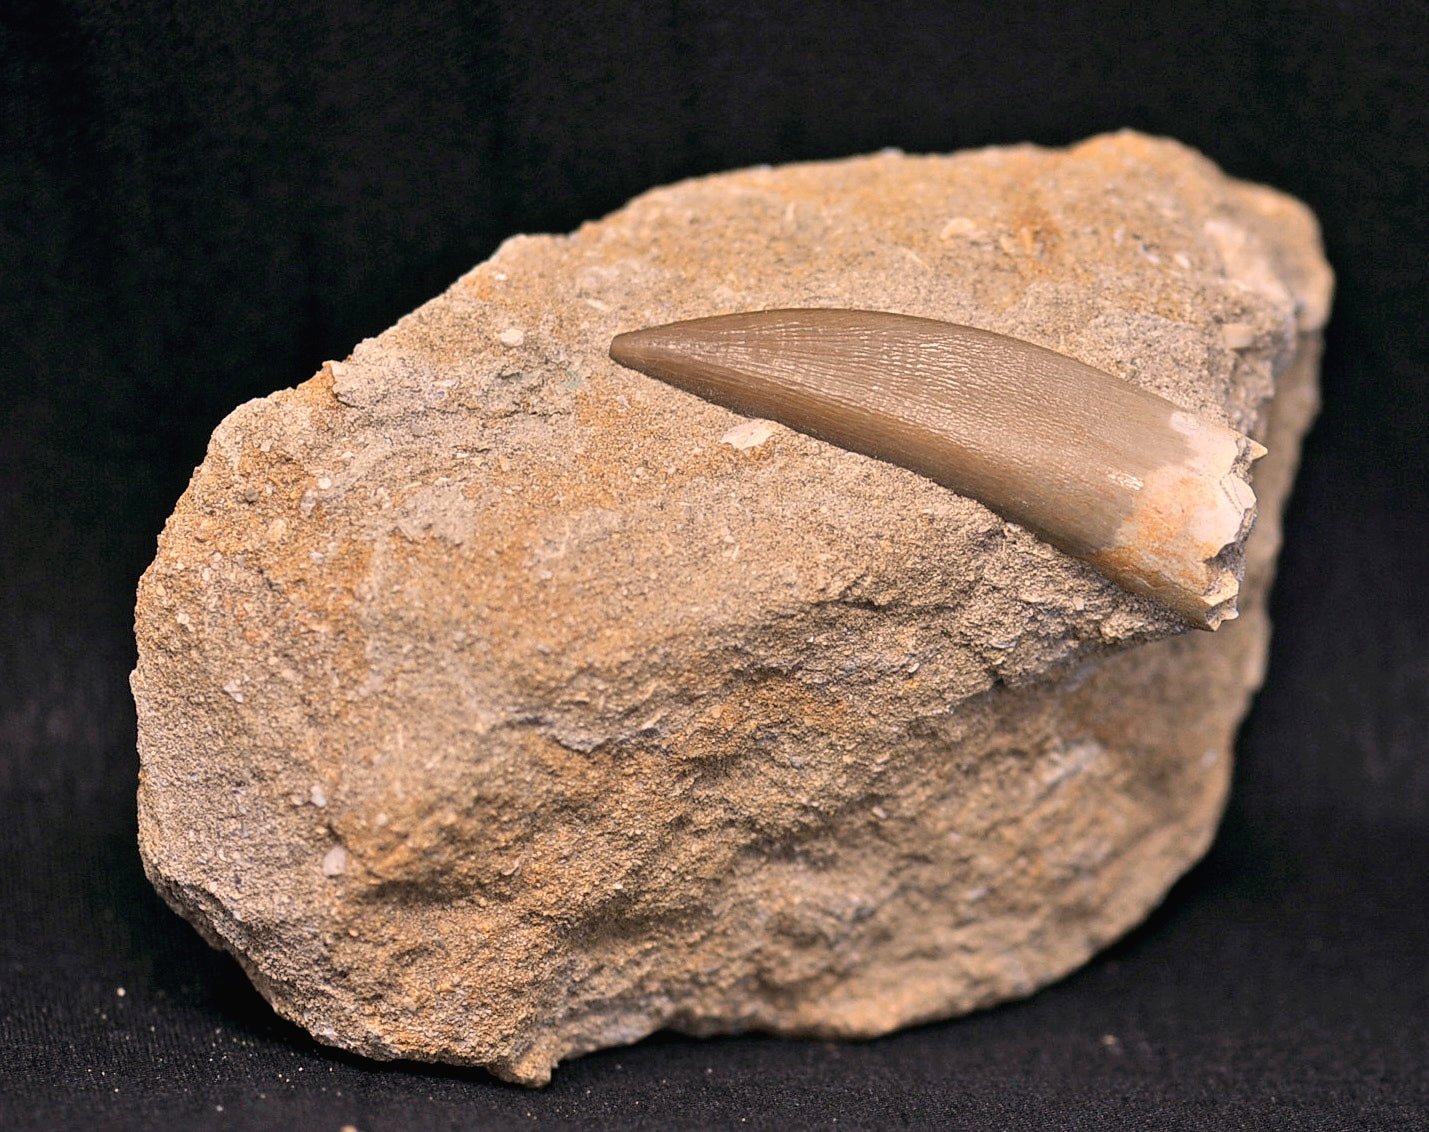 Plesiosaurus tooth in matrix